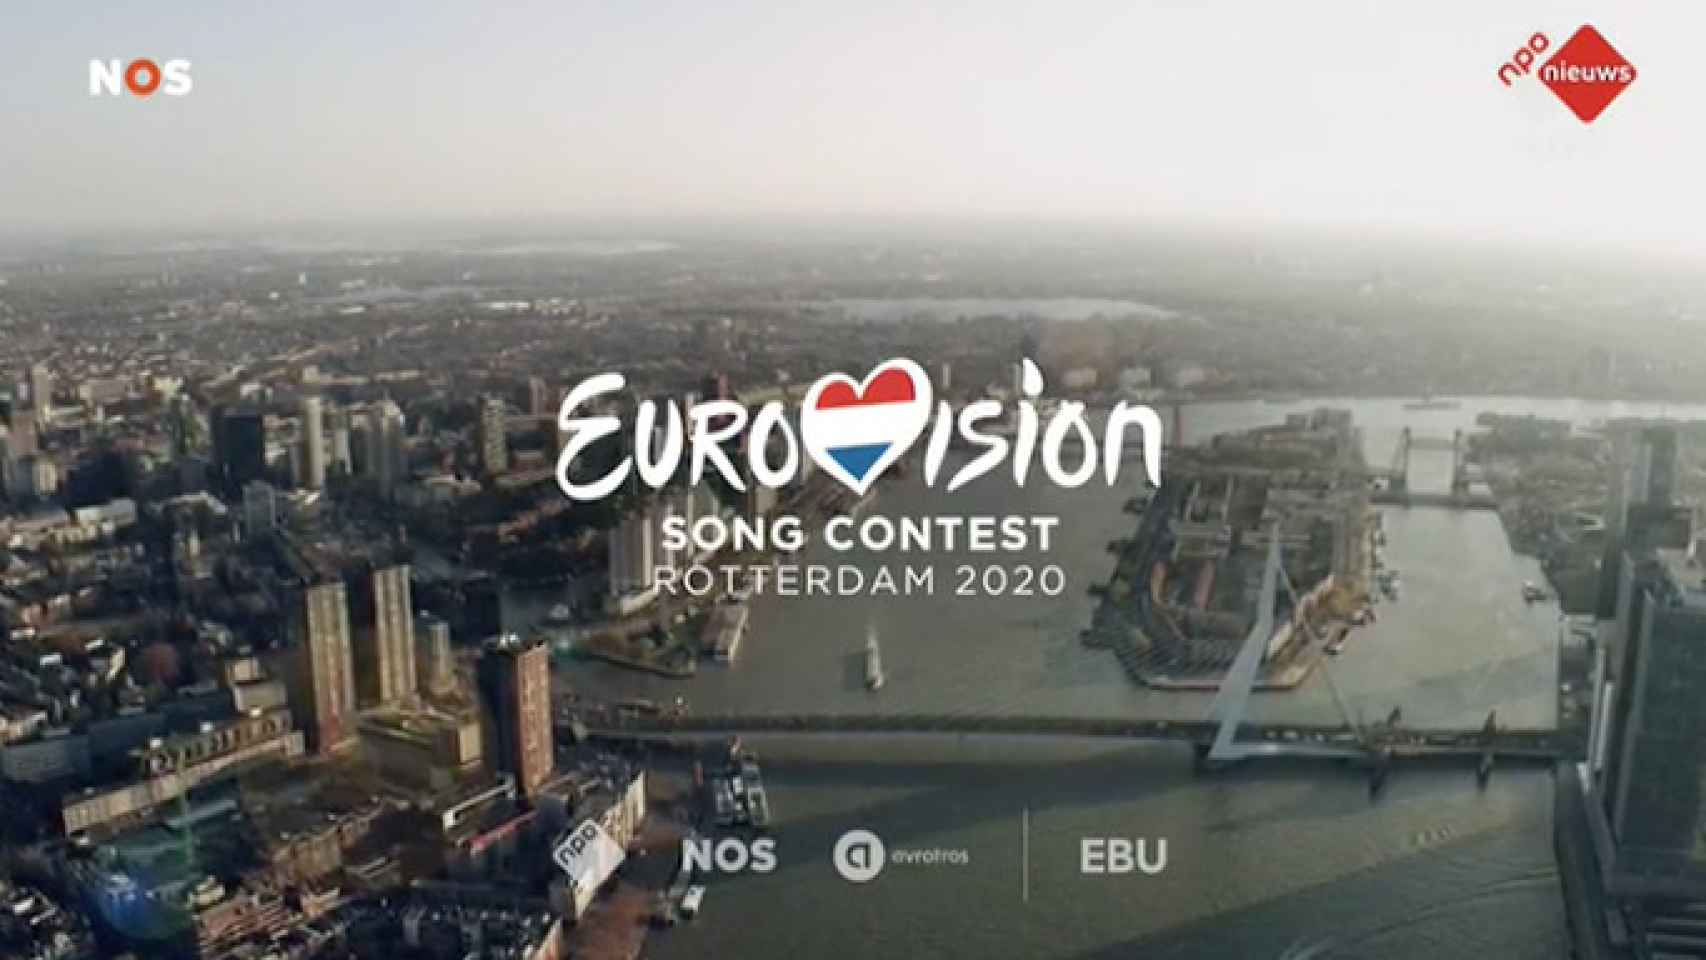 Rotterdam albergará el próximo Festival de Eurovisión 2020